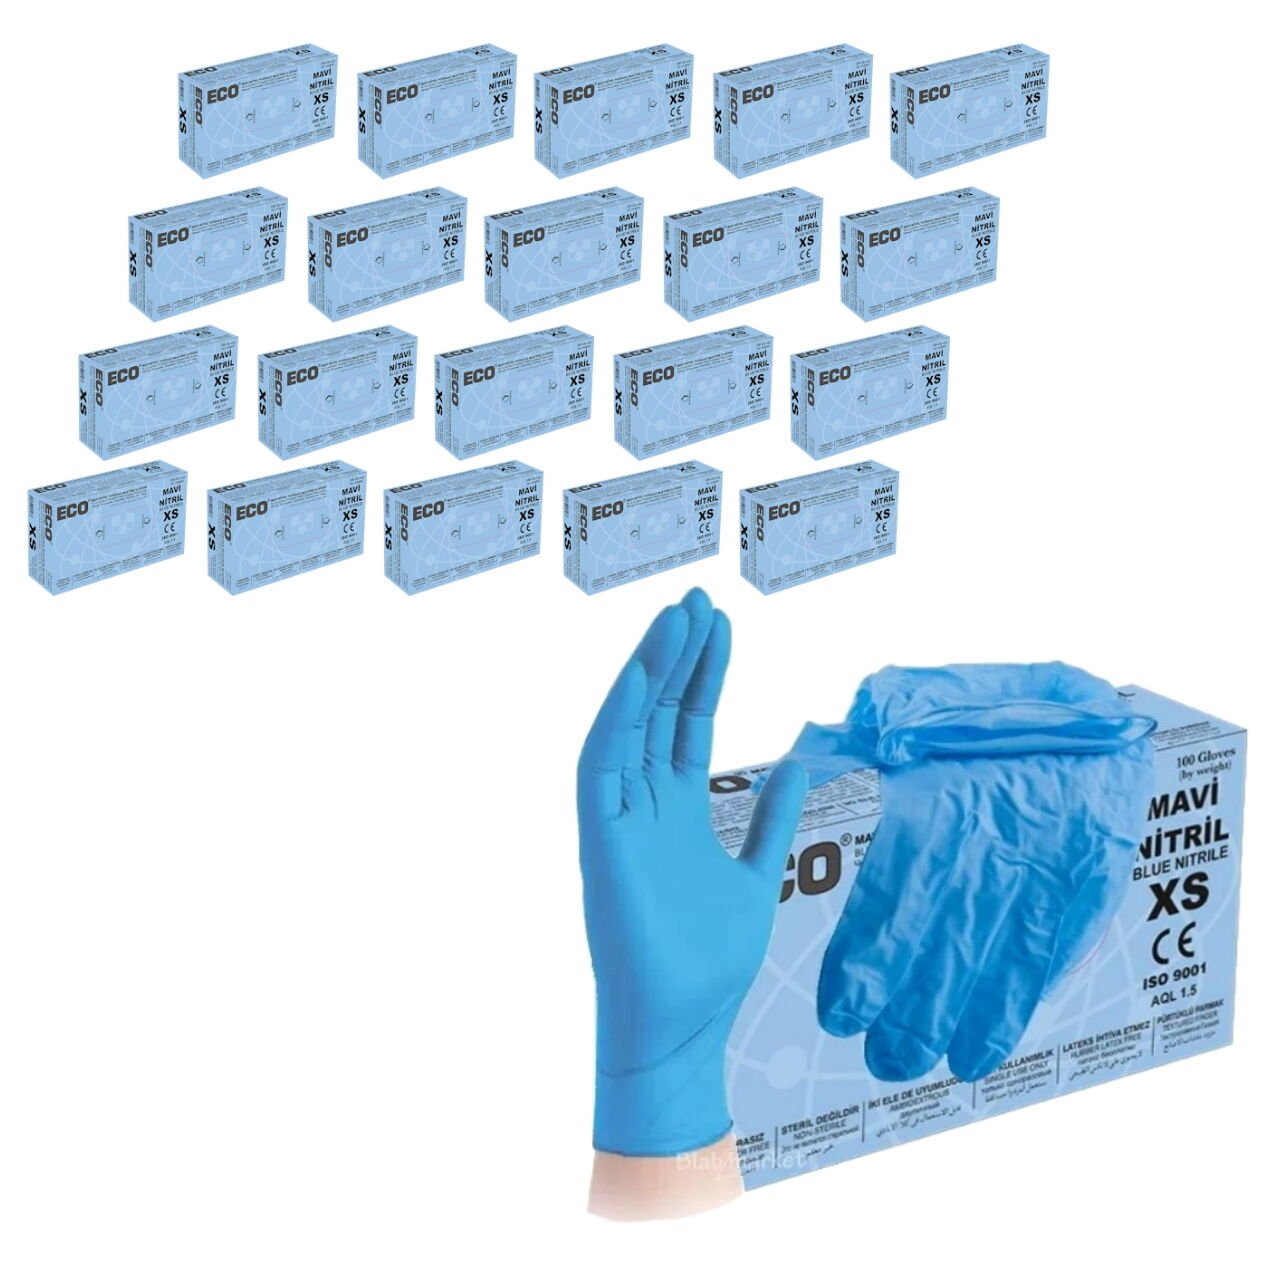 Nitril Eldiven Mavi XS Beden - Çok Amaçlı Pudrasız 20 Paket